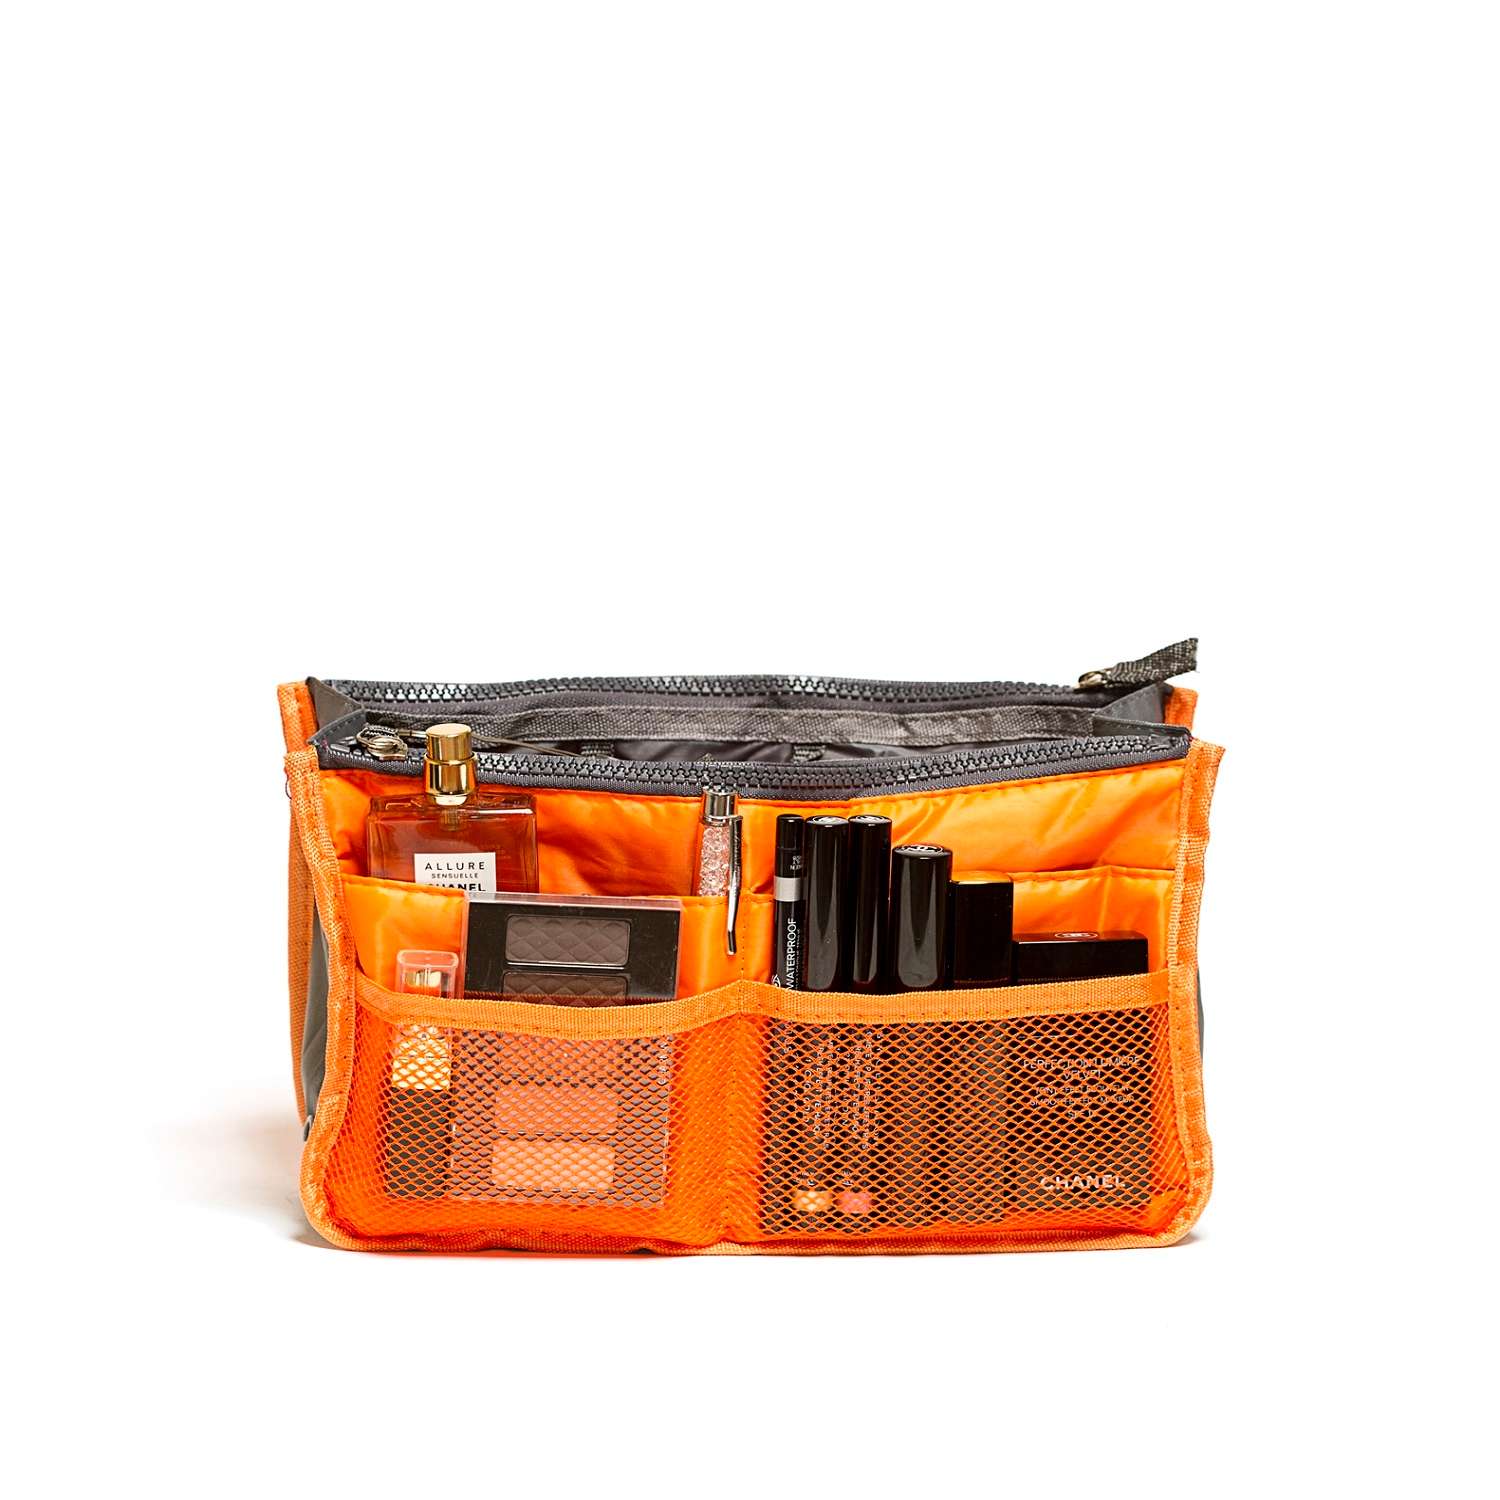 Органайзер Homsu для сумки оранжевый - фото 1